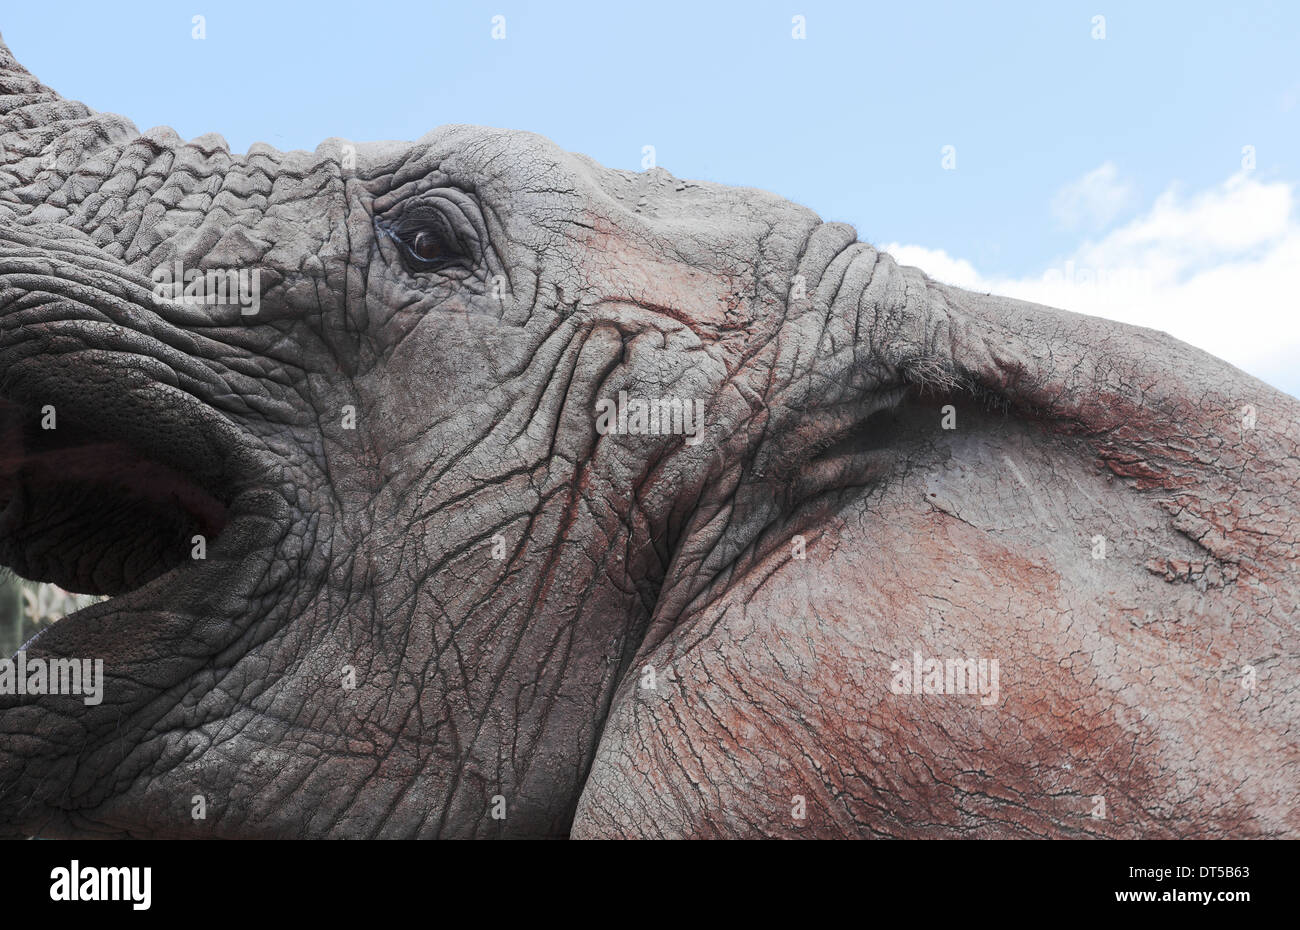 Elephant elevando su cabeza hacia el cielo con su boca abierta Foto de stock